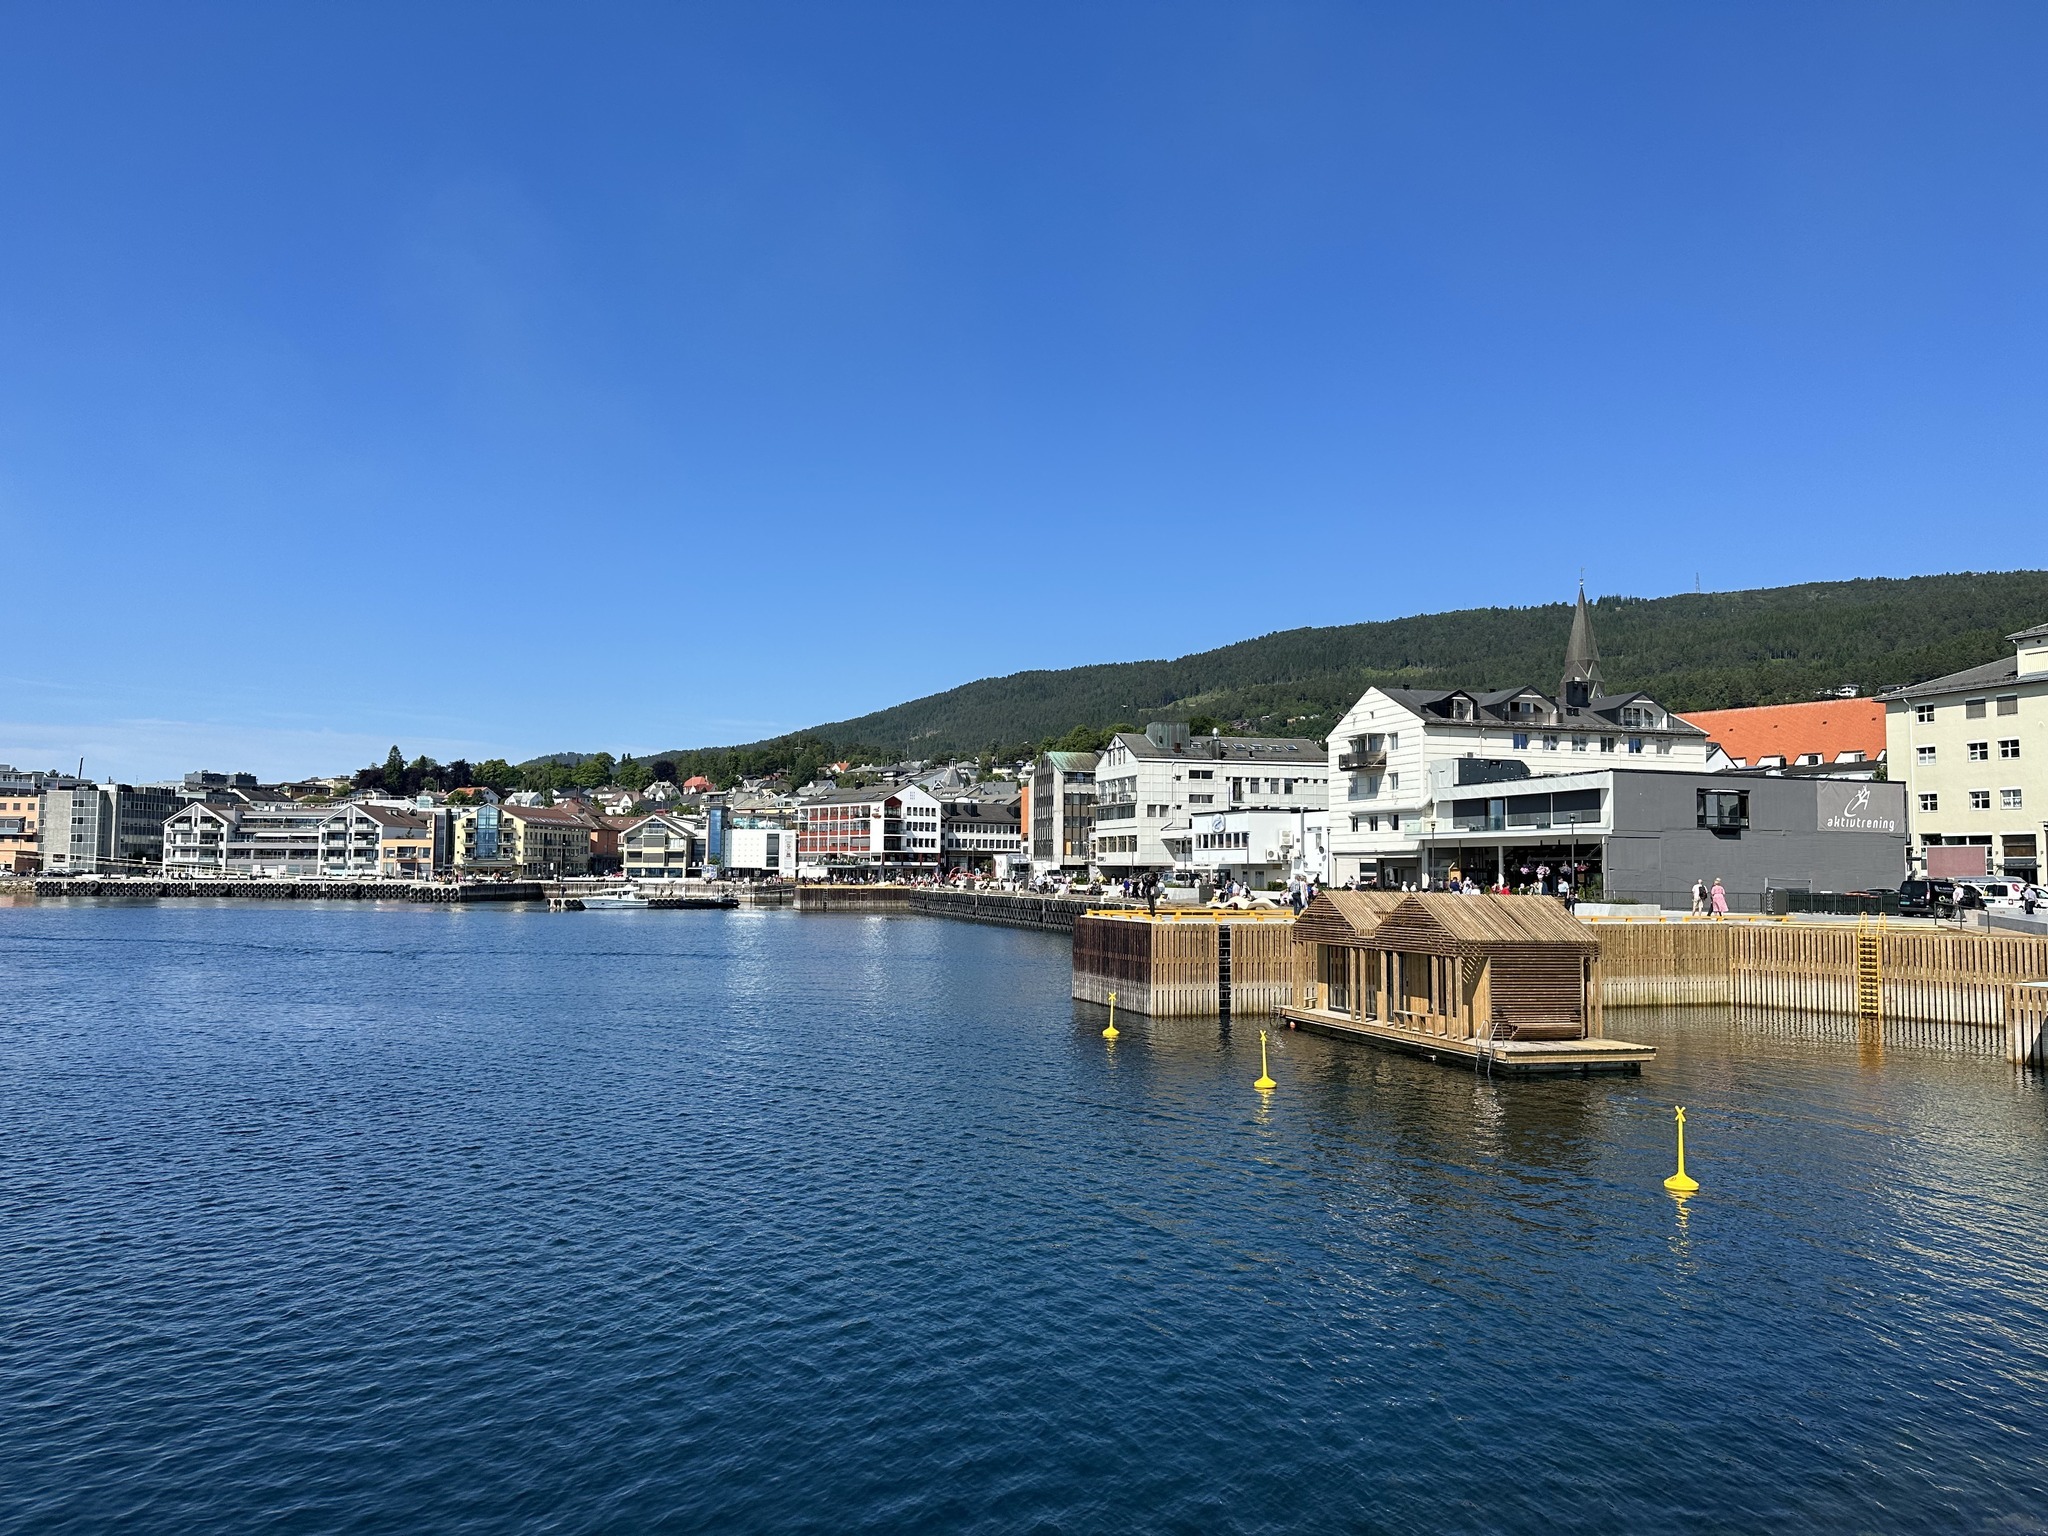 Bilde som viser oversikt over sjøkanten i Molde vist fra Øst